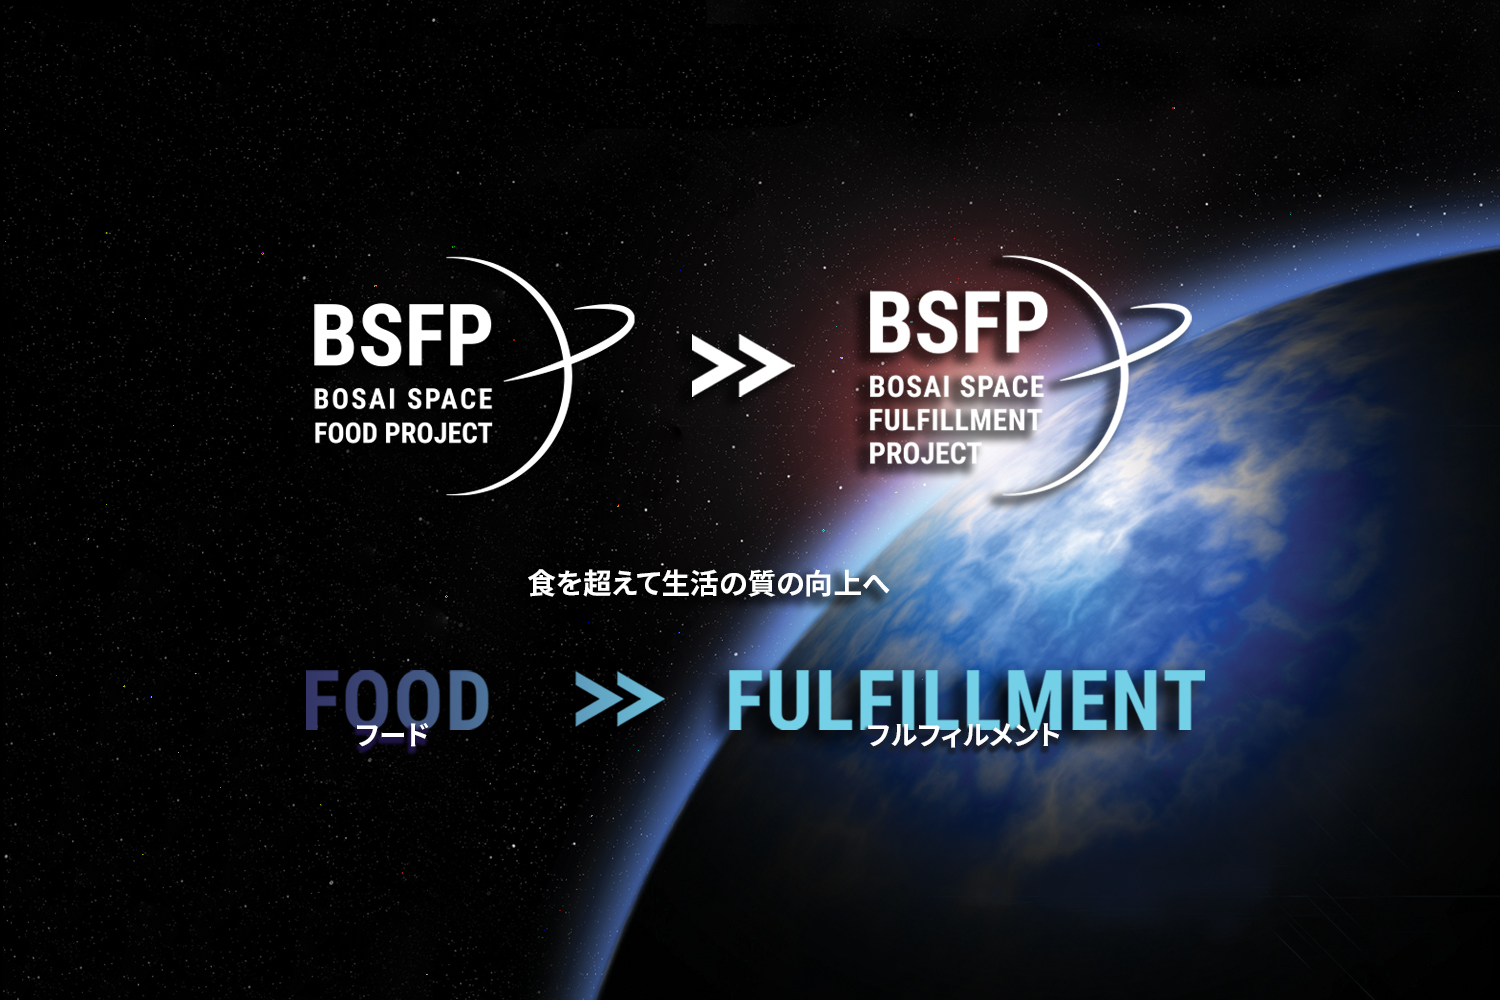 ニュースタンダード社会における防災 宇宙フルフィルメントプロジェクト Bsfp 始動 株式会社ワンテーブルのプレスリリース